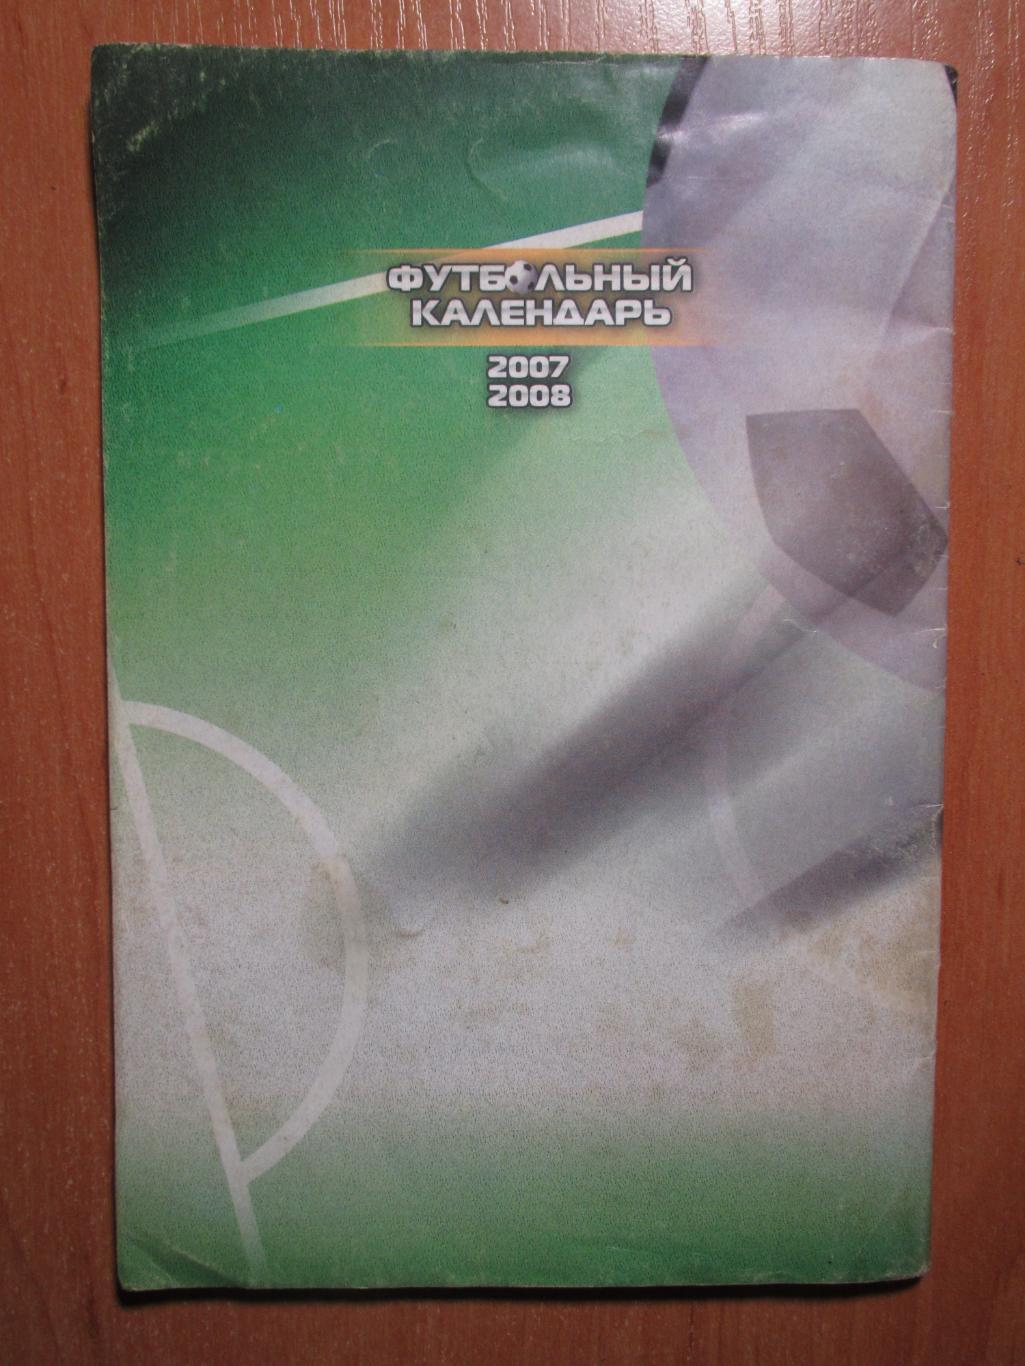 Футбольный календарь 2007/2008 1